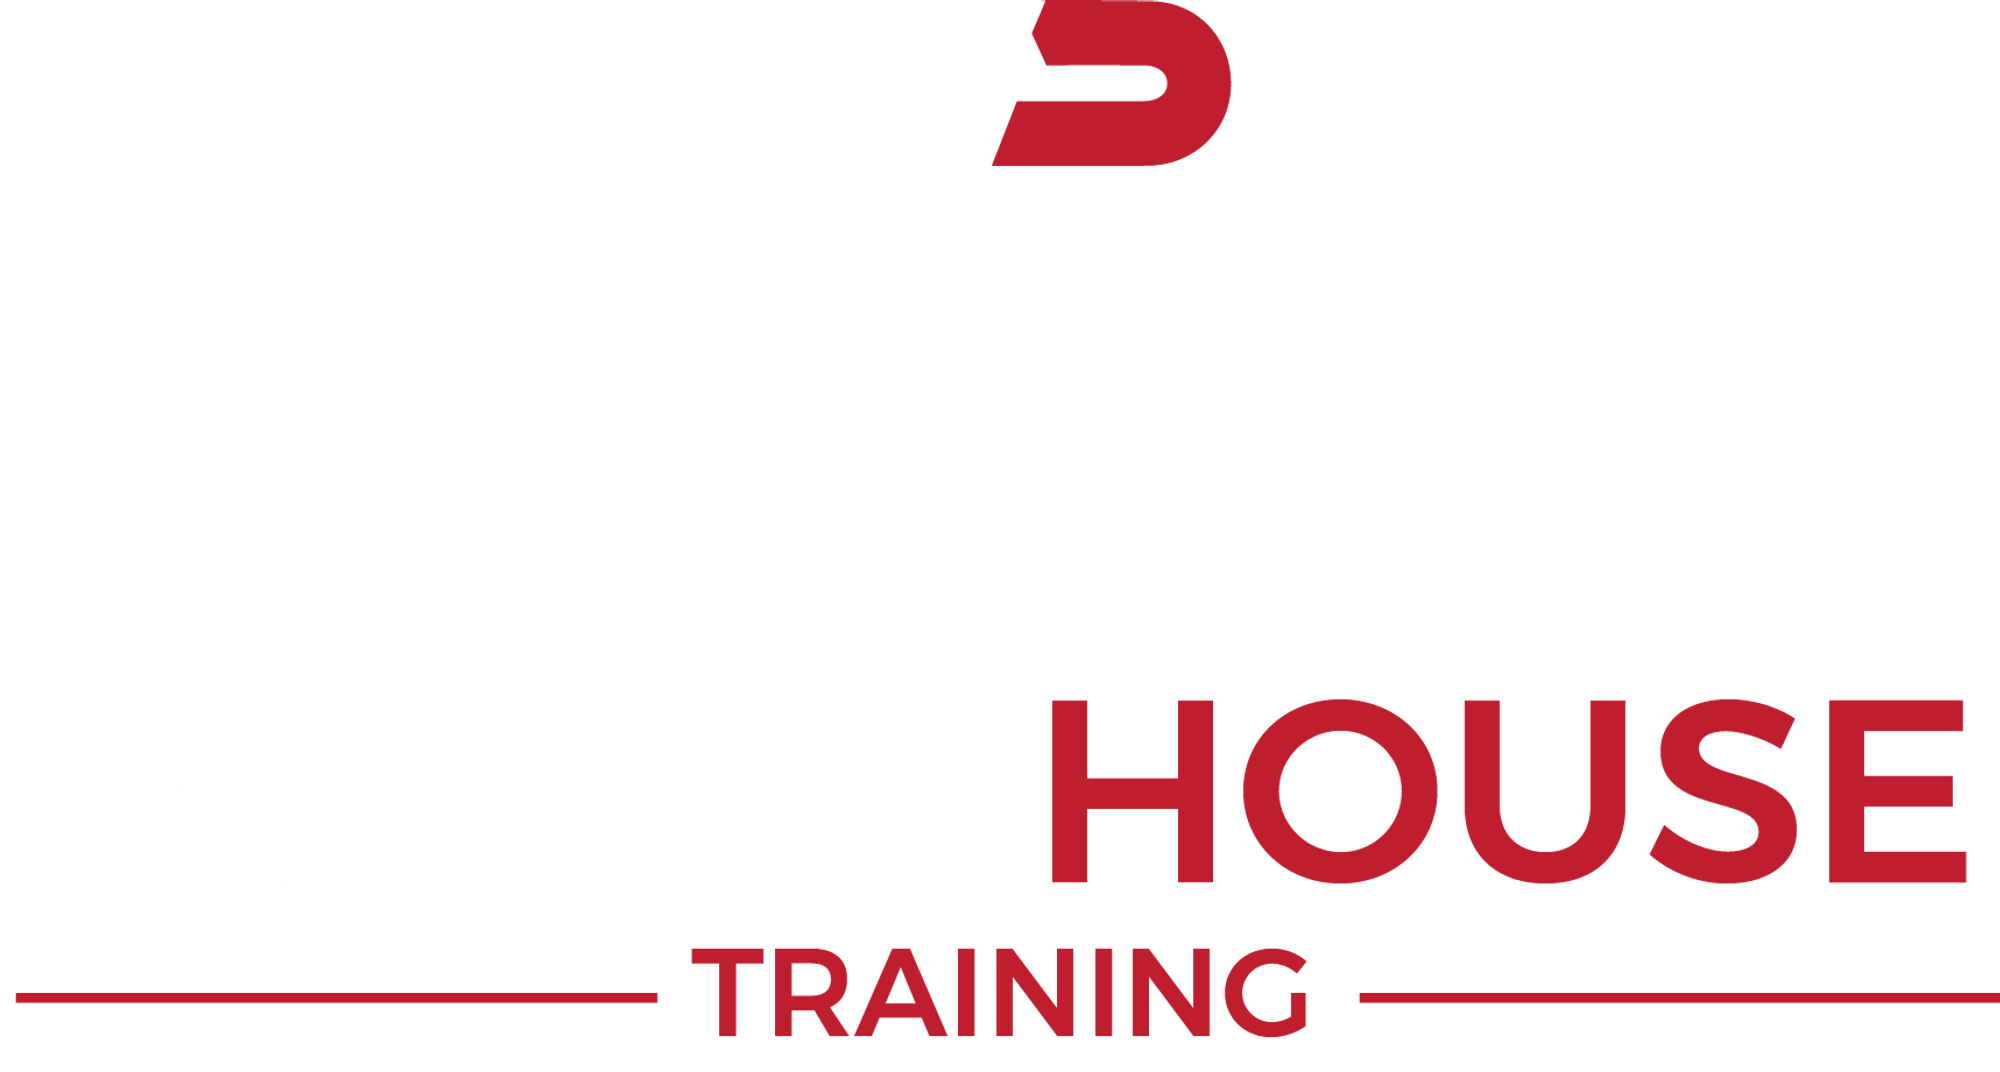 Power House Training | undefined Logo